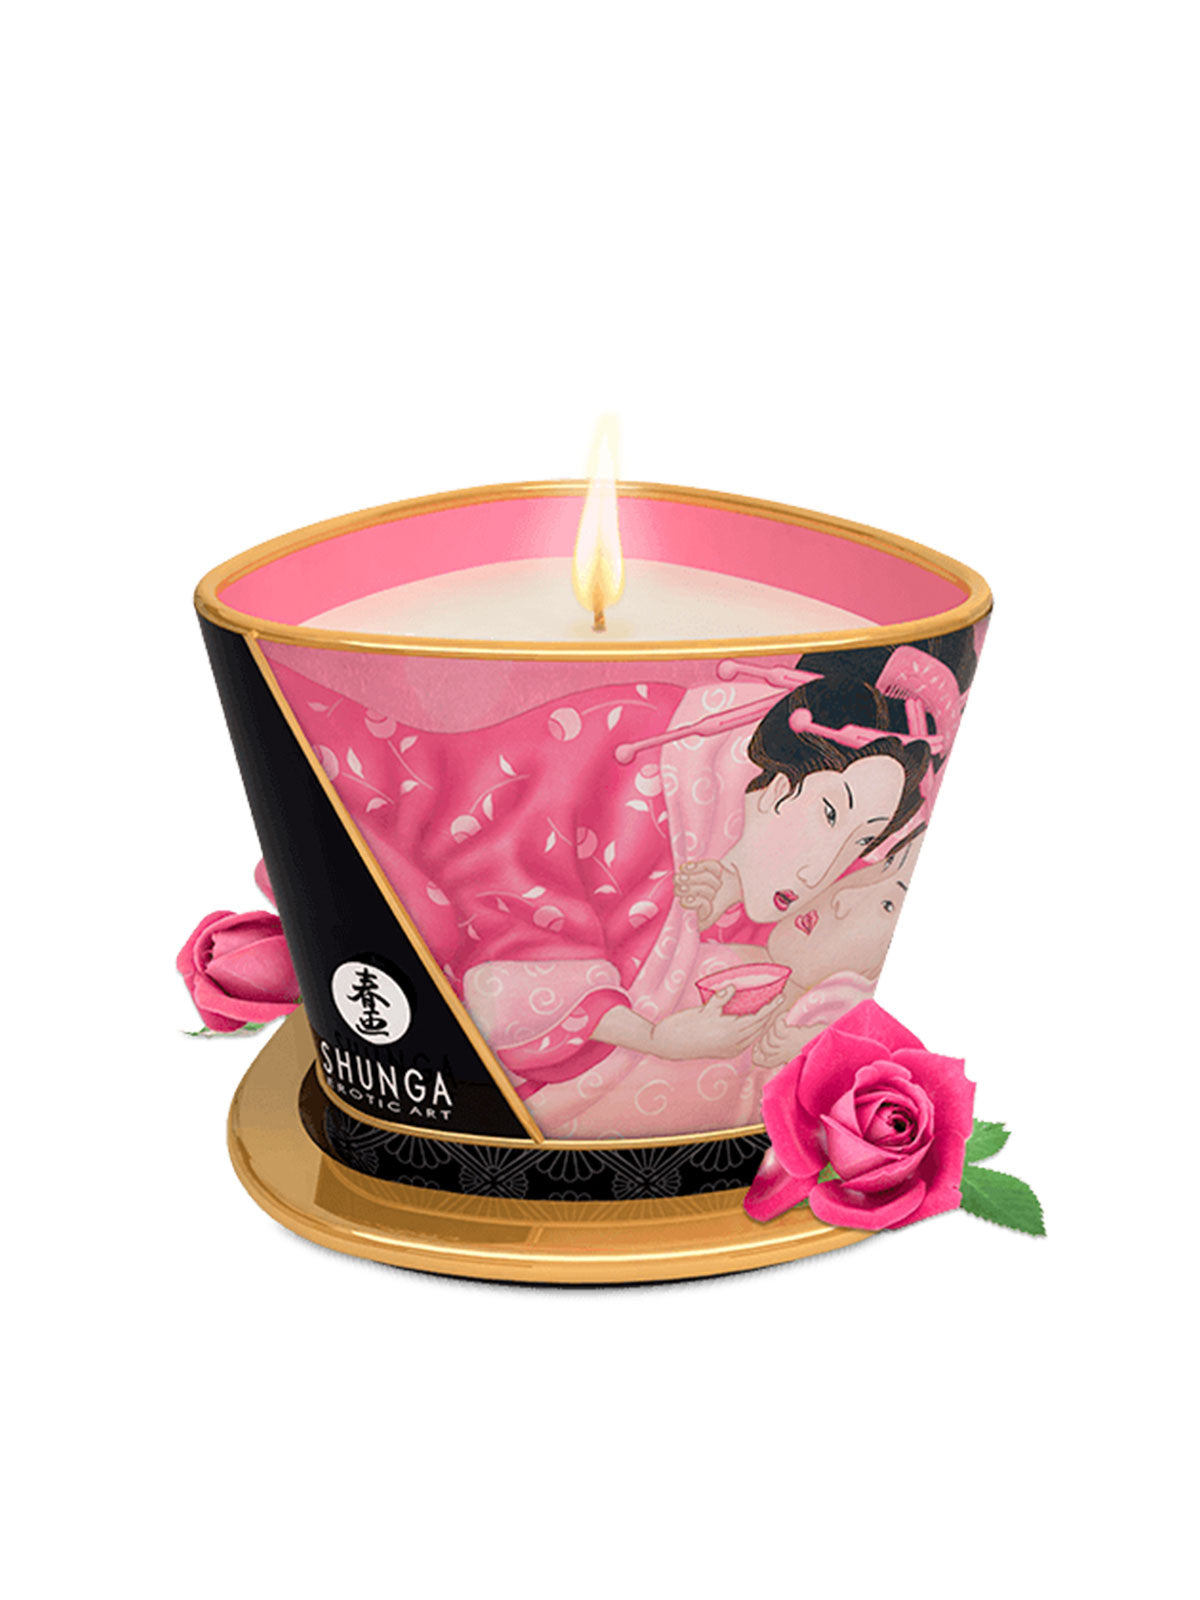 Rose Erotic Massage Candles by Shunga 